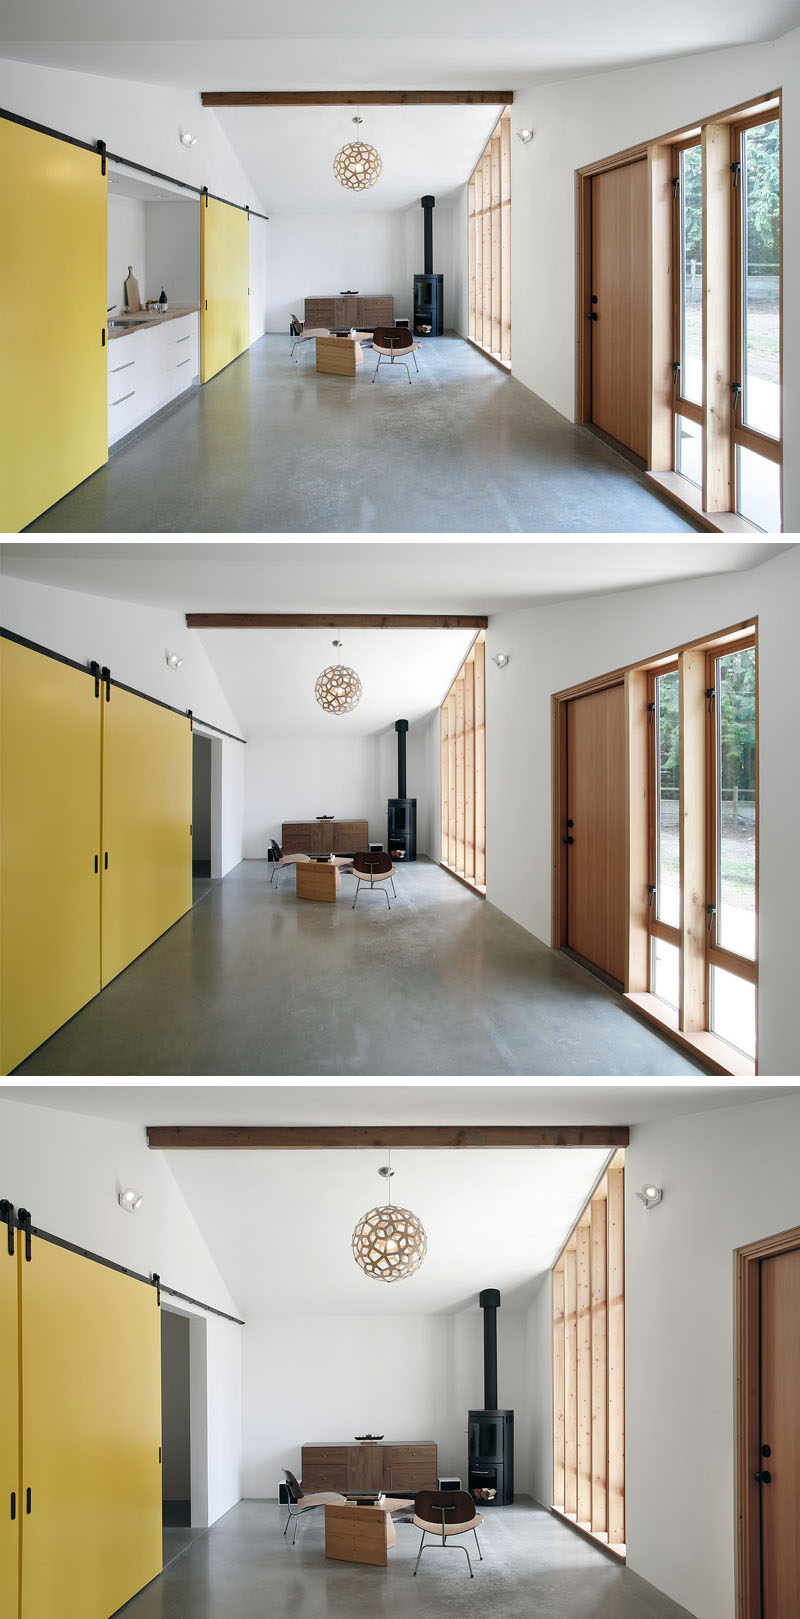 Ярко-жёлтые двери, отделяющие кухню от гостиной в доме